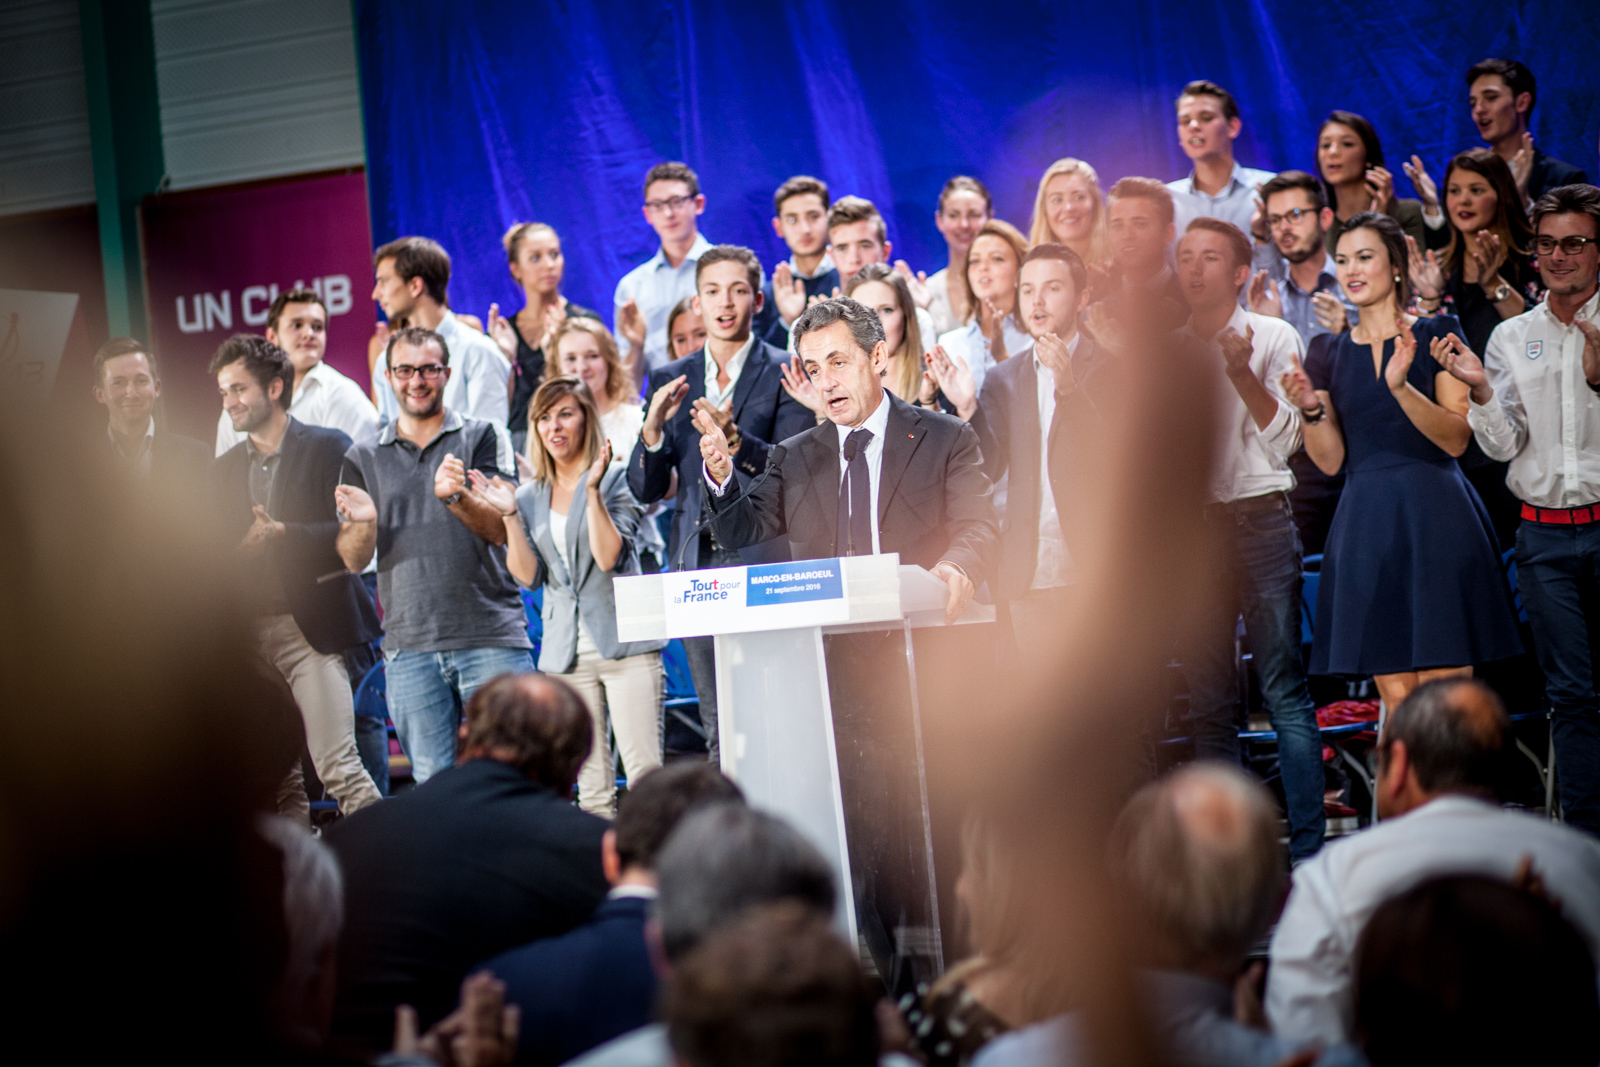  Nicolas Sarkozy, lors de son meeting dans la salle des sports de Marcq-en-Baroeul, en septembre 2016, en campagne pour la primaire des républicains. Publié dans Le Monde 